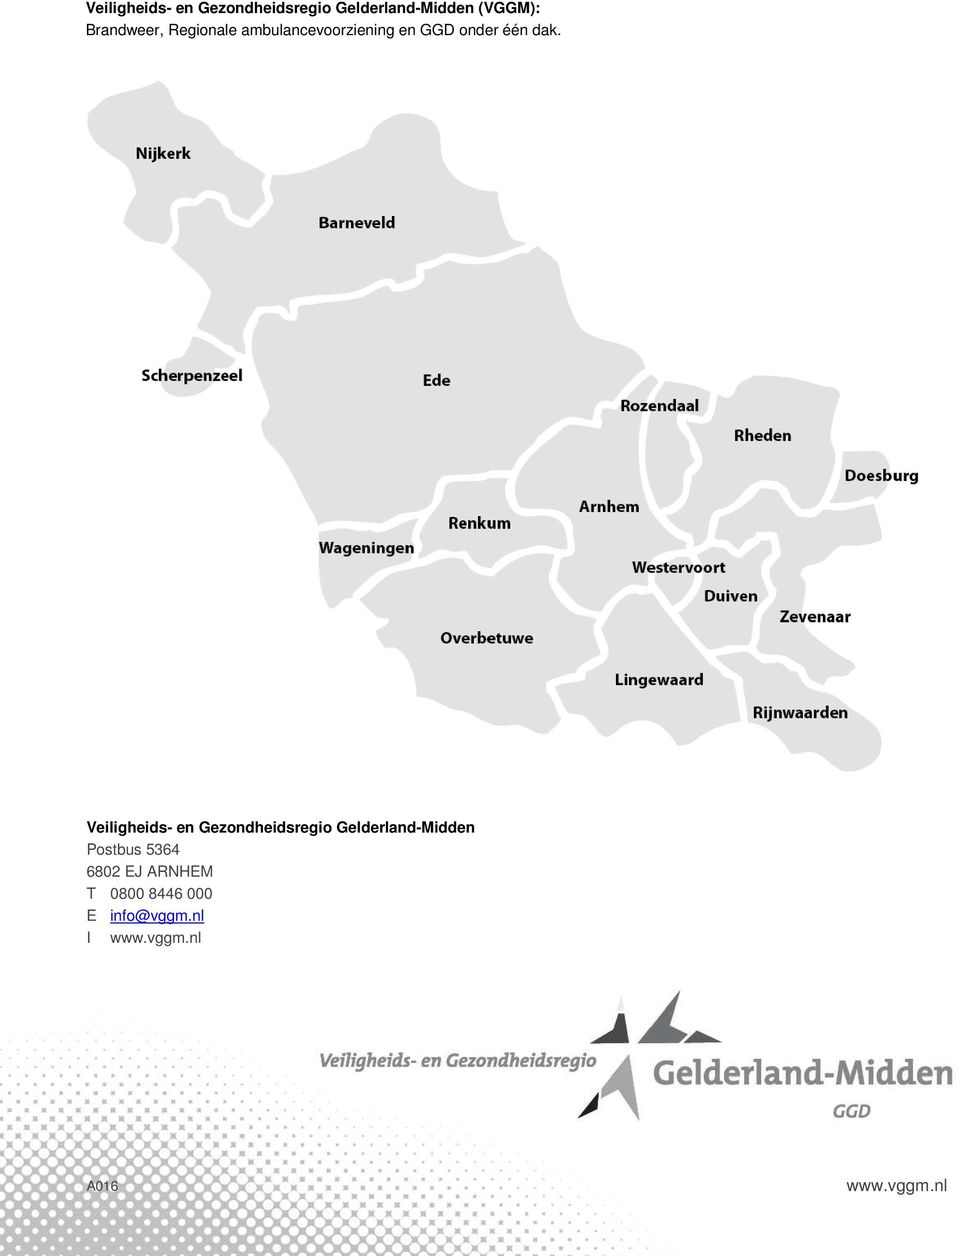 Veiligheids- en Gezondheidsregio Gelderland-Midden Postbus 5364